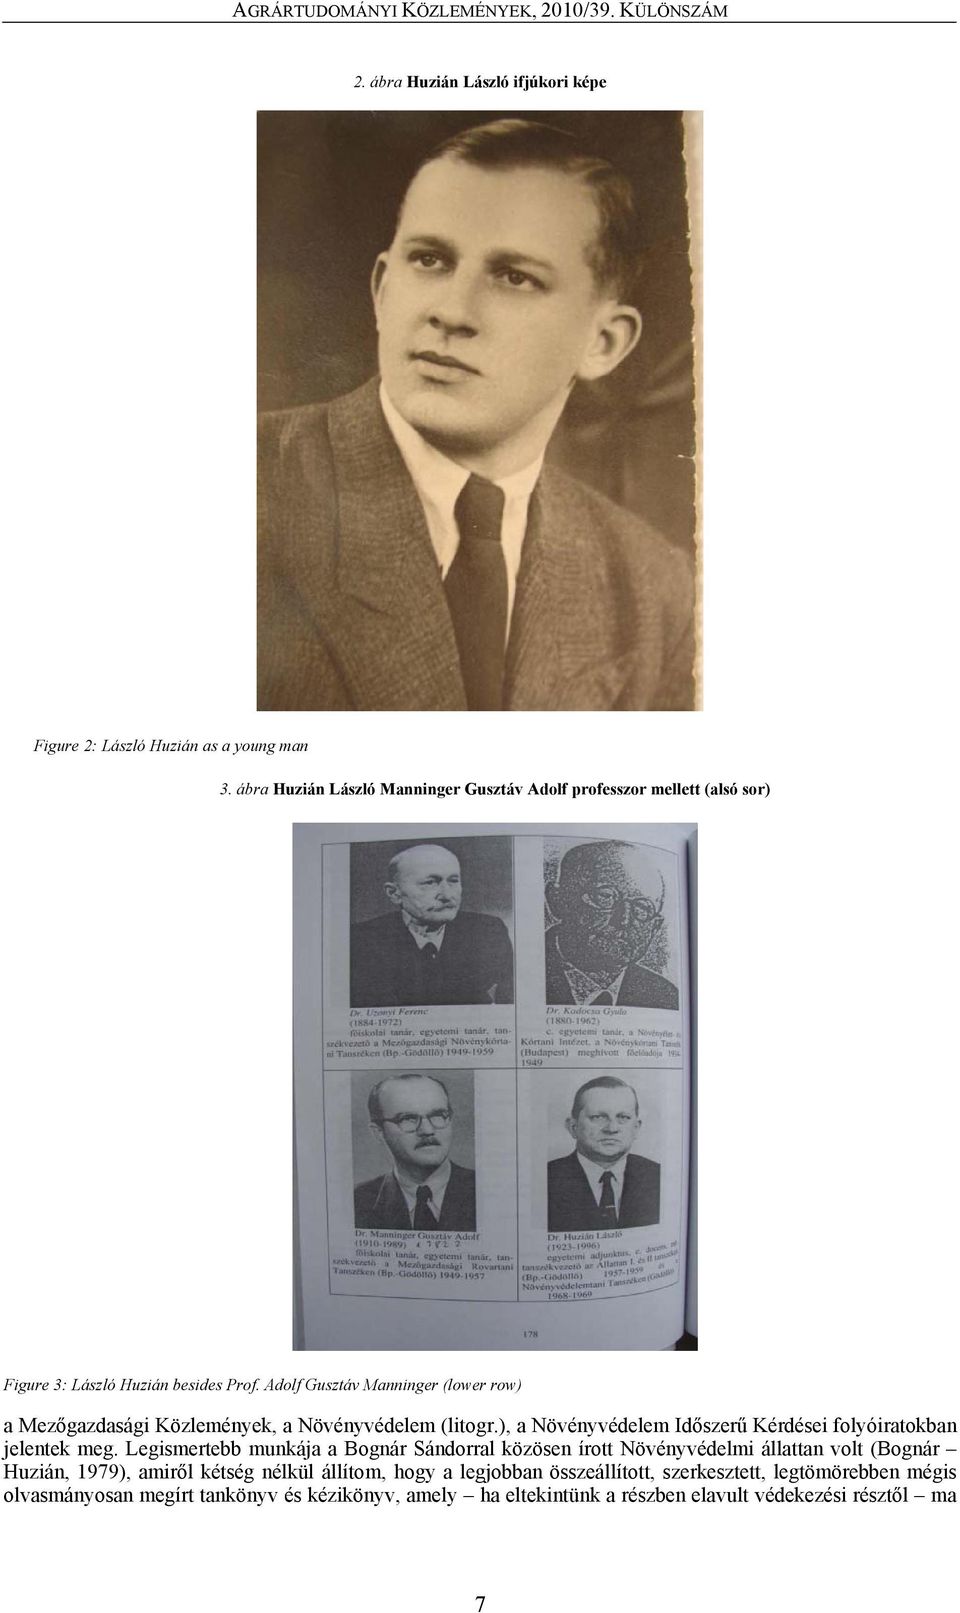 Adolf Gusztáv Manninger (lower row) a Mezőgazdasági Közlemények, a Növényvédelem (litogr.), a Növényvédelem Időszerű Kérdései folyóiratokban jelentek meg.